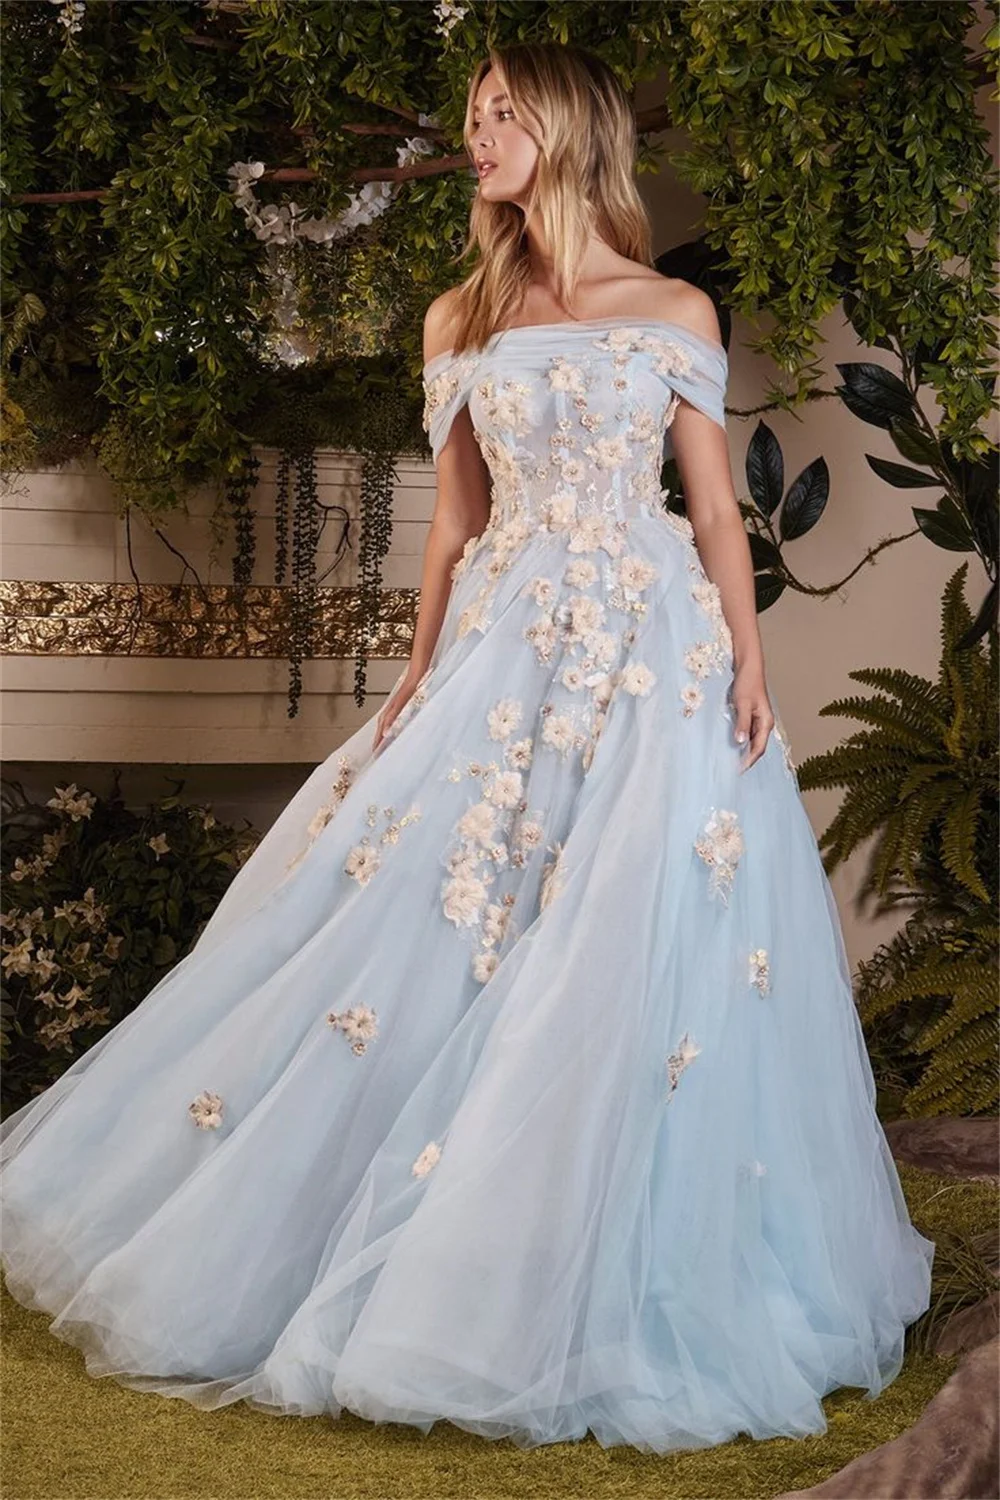 Платье для выпускного вечера с открытыми плечами ручной работы Cathy 2023, вечерние платья с 3D цветами, детское платье принцессы из голубого тюля, Vestidos De Noche